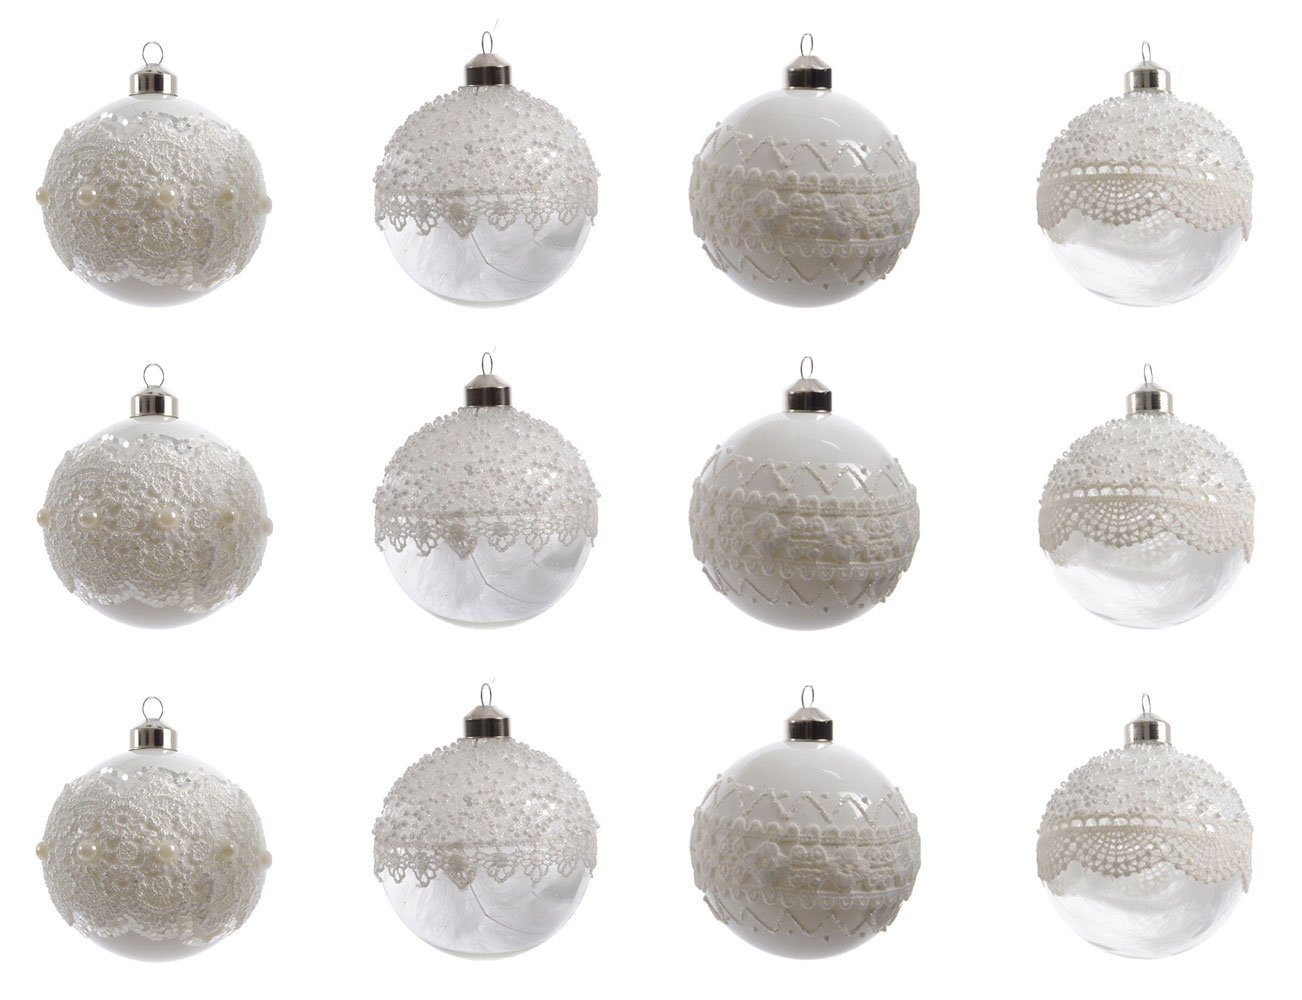 Decoris season decorations Weihnachtsbaumkugel, Weihnachtskugeln Glas mit Spitze und Federn 8cm klar / weiß, 12er Set von Decoris season decorations